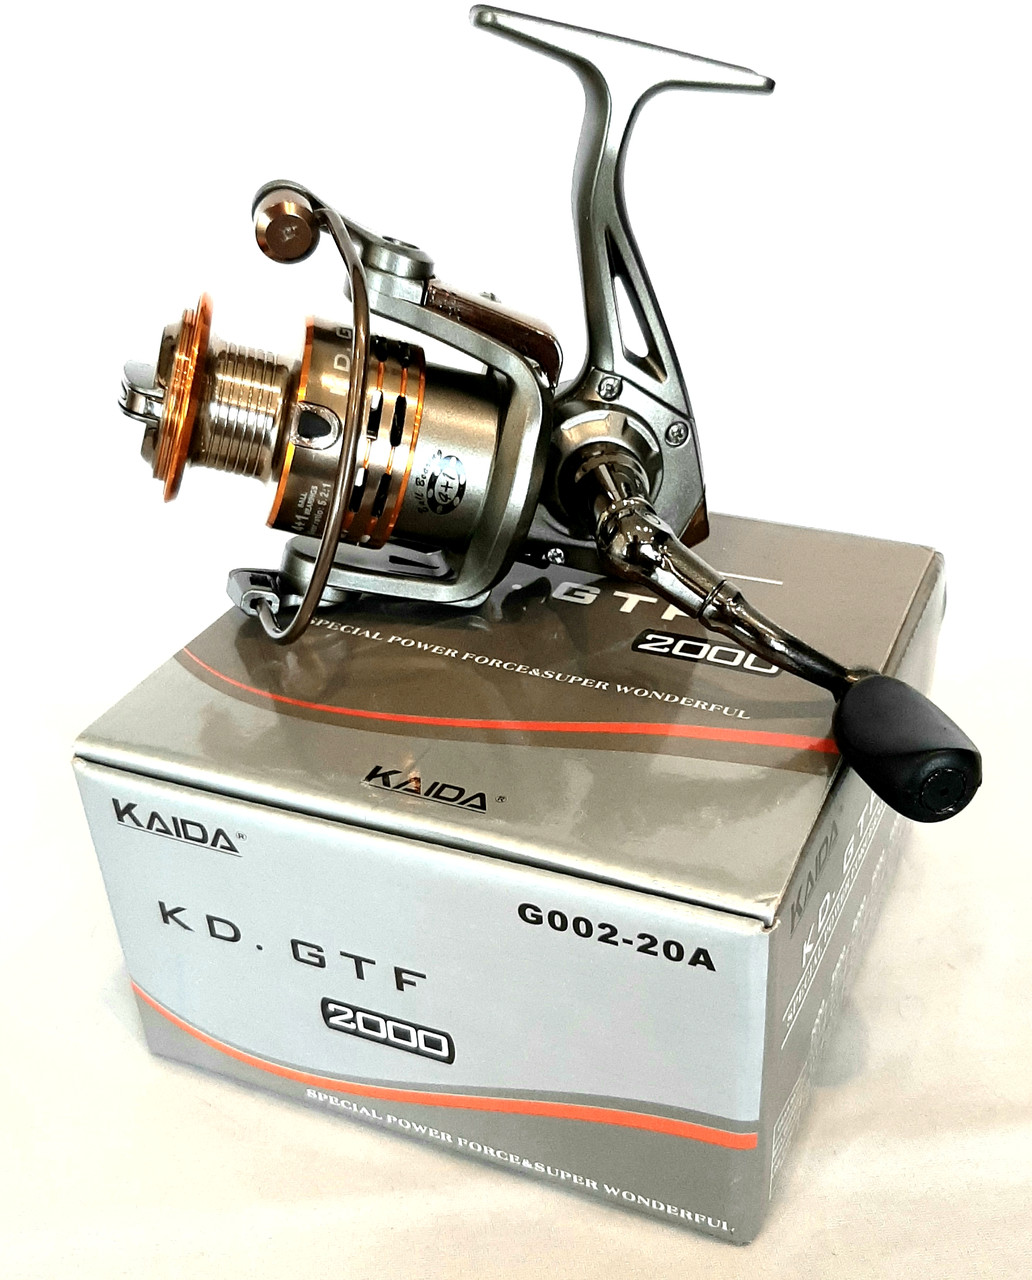 Спиннинговая рибальська котушка Kaida ( Weida) KD.GTF 3000, спиннинговая ловля